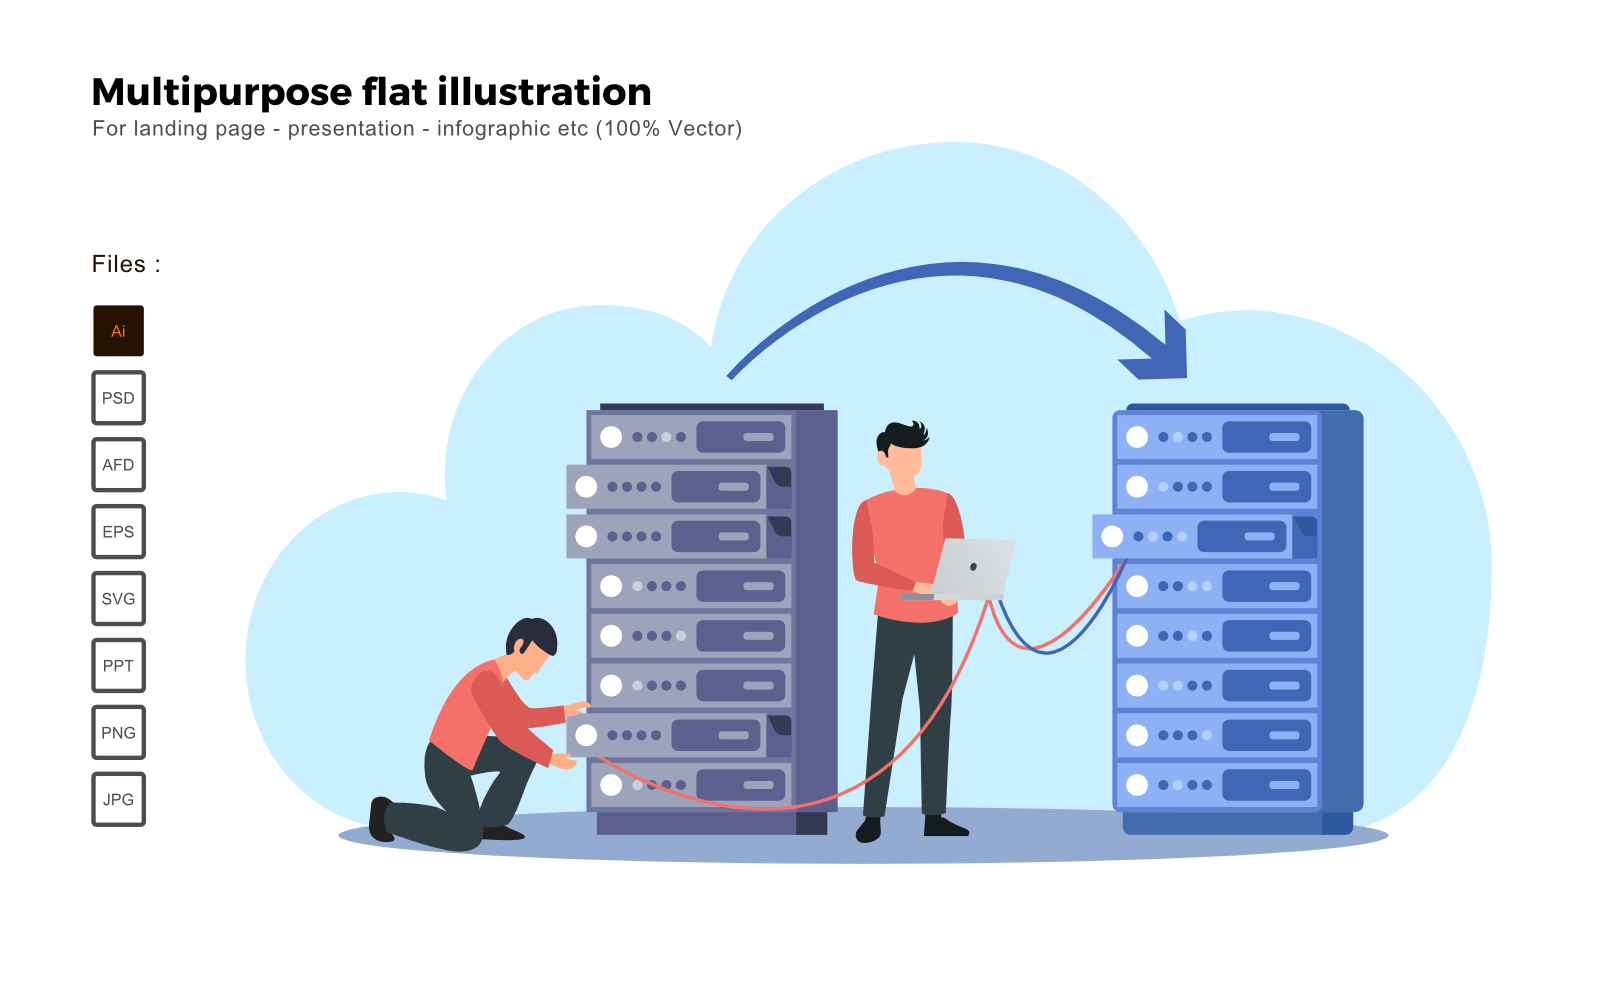 Multipurpose Flat Illustration Server Migration - Vector Image